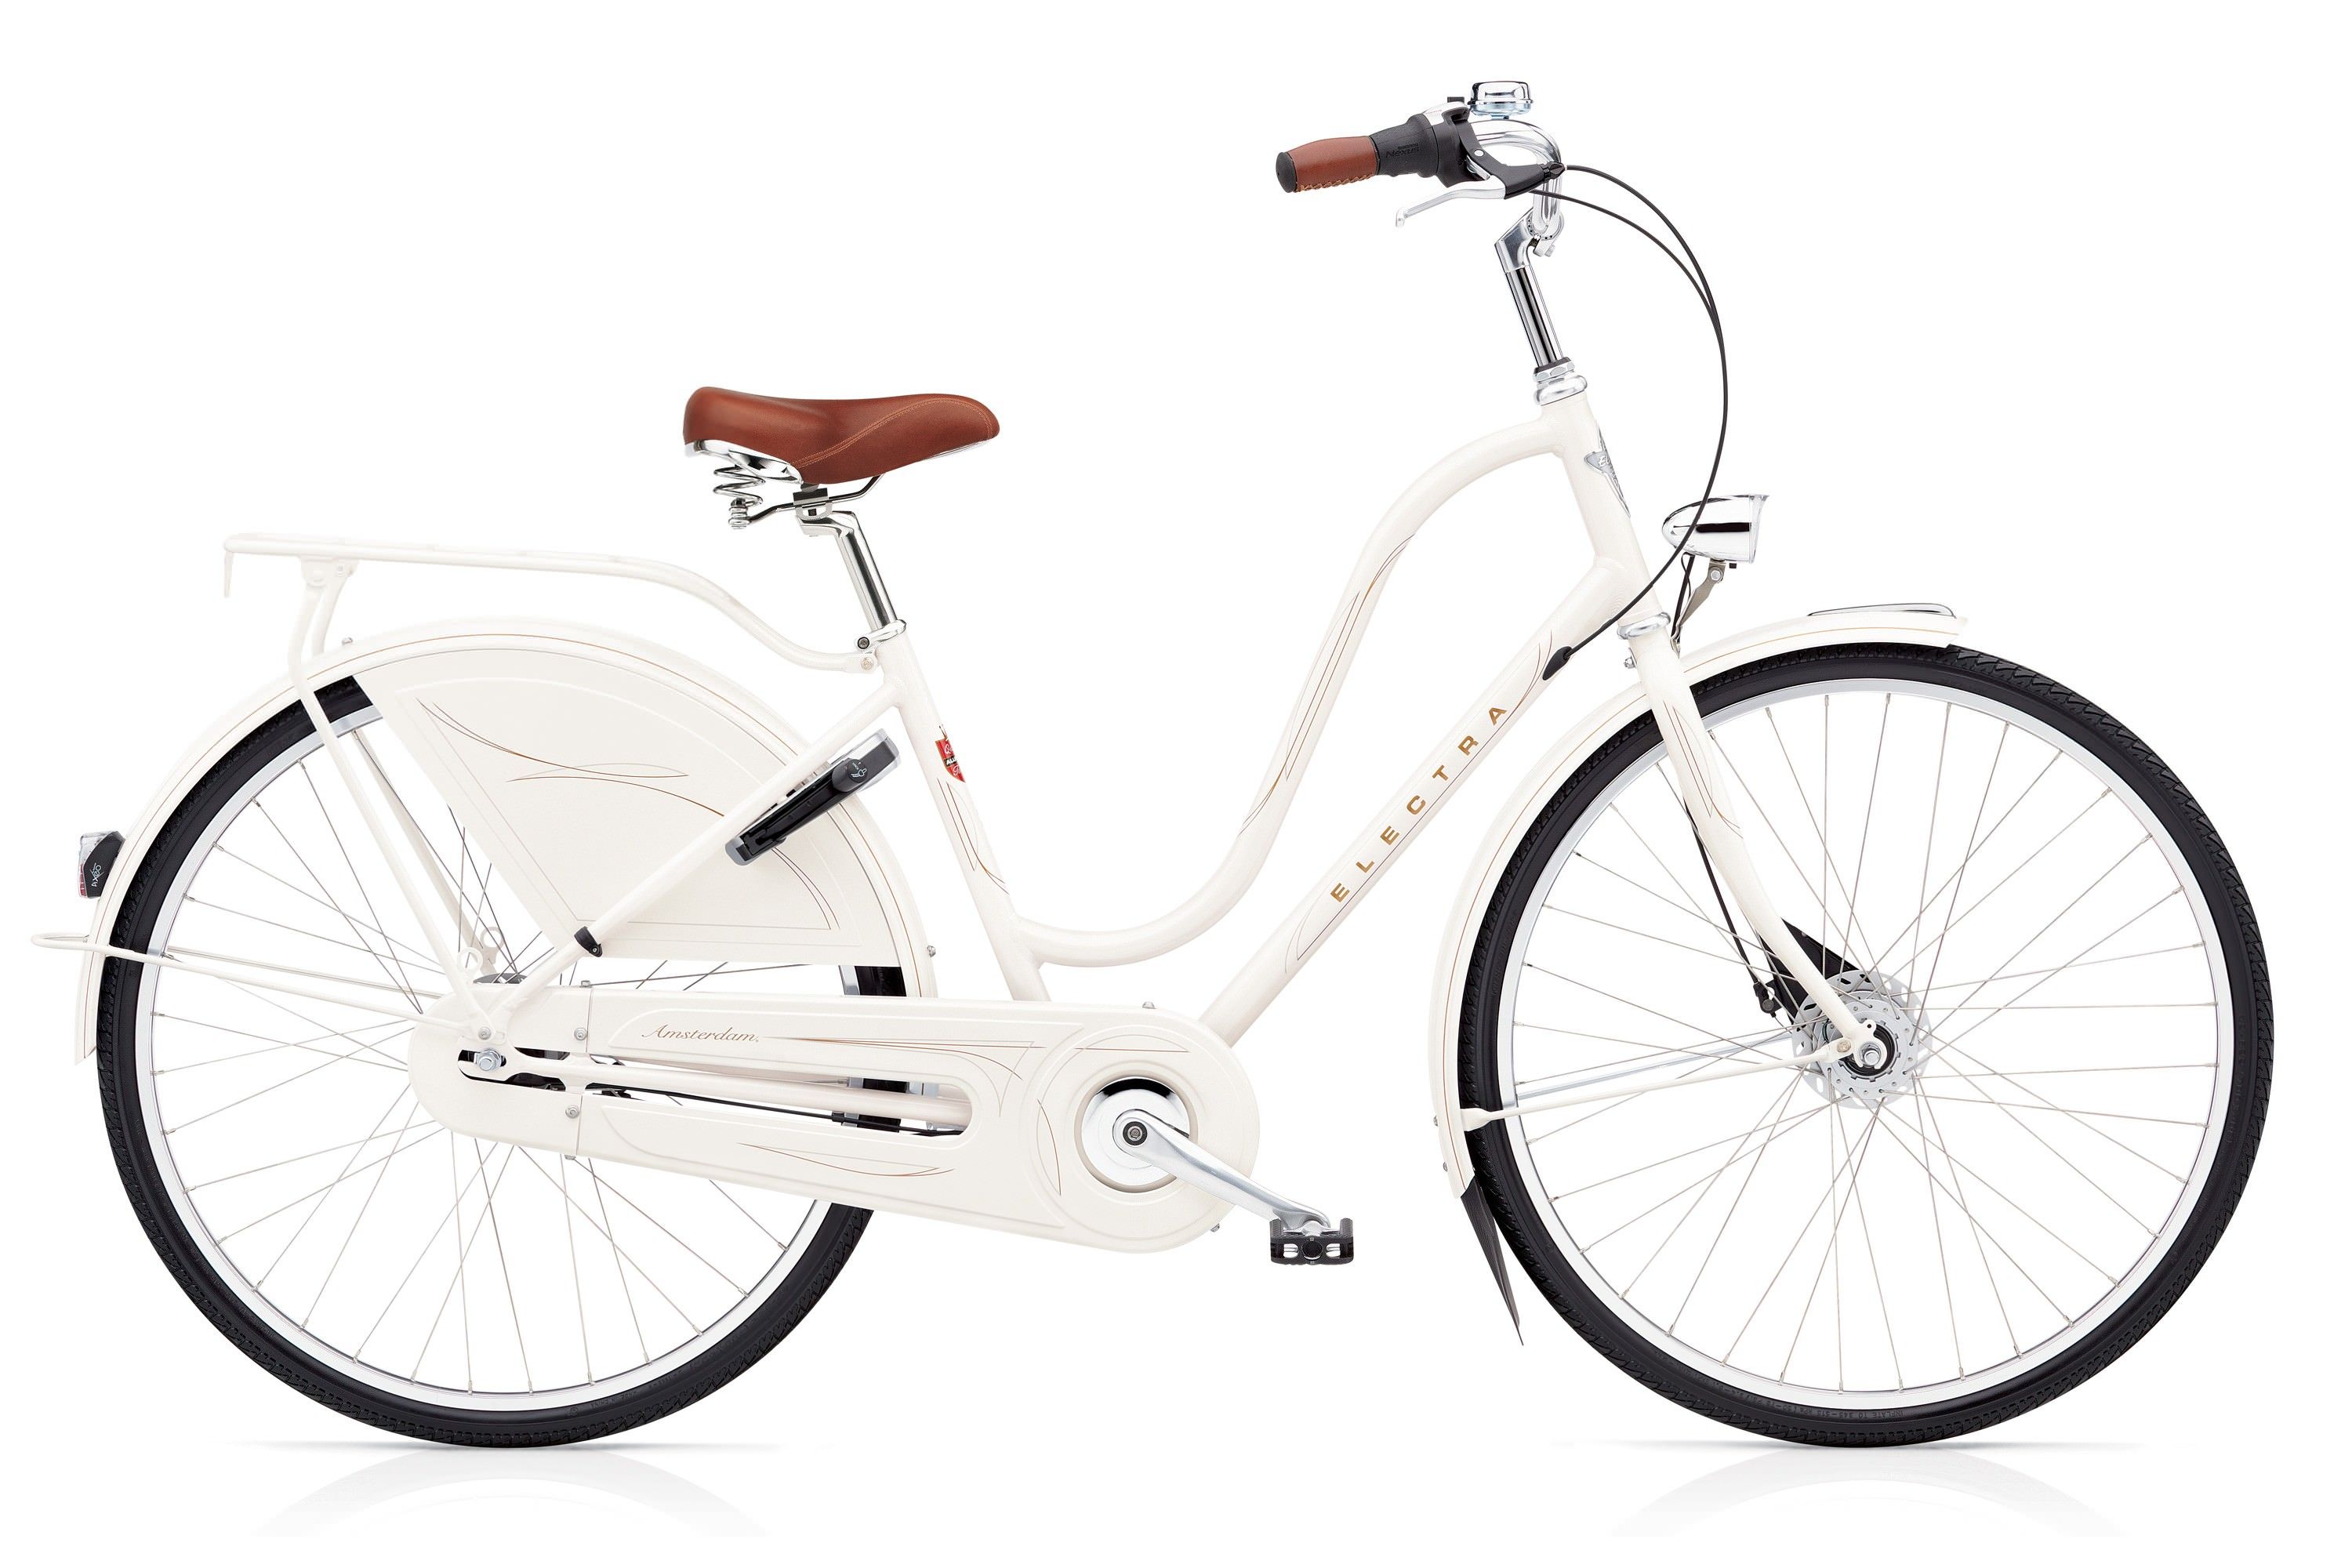  Отзывы о Трехколесный детский велосипед Electra Amsterdam Royal 8i Ladies 2017